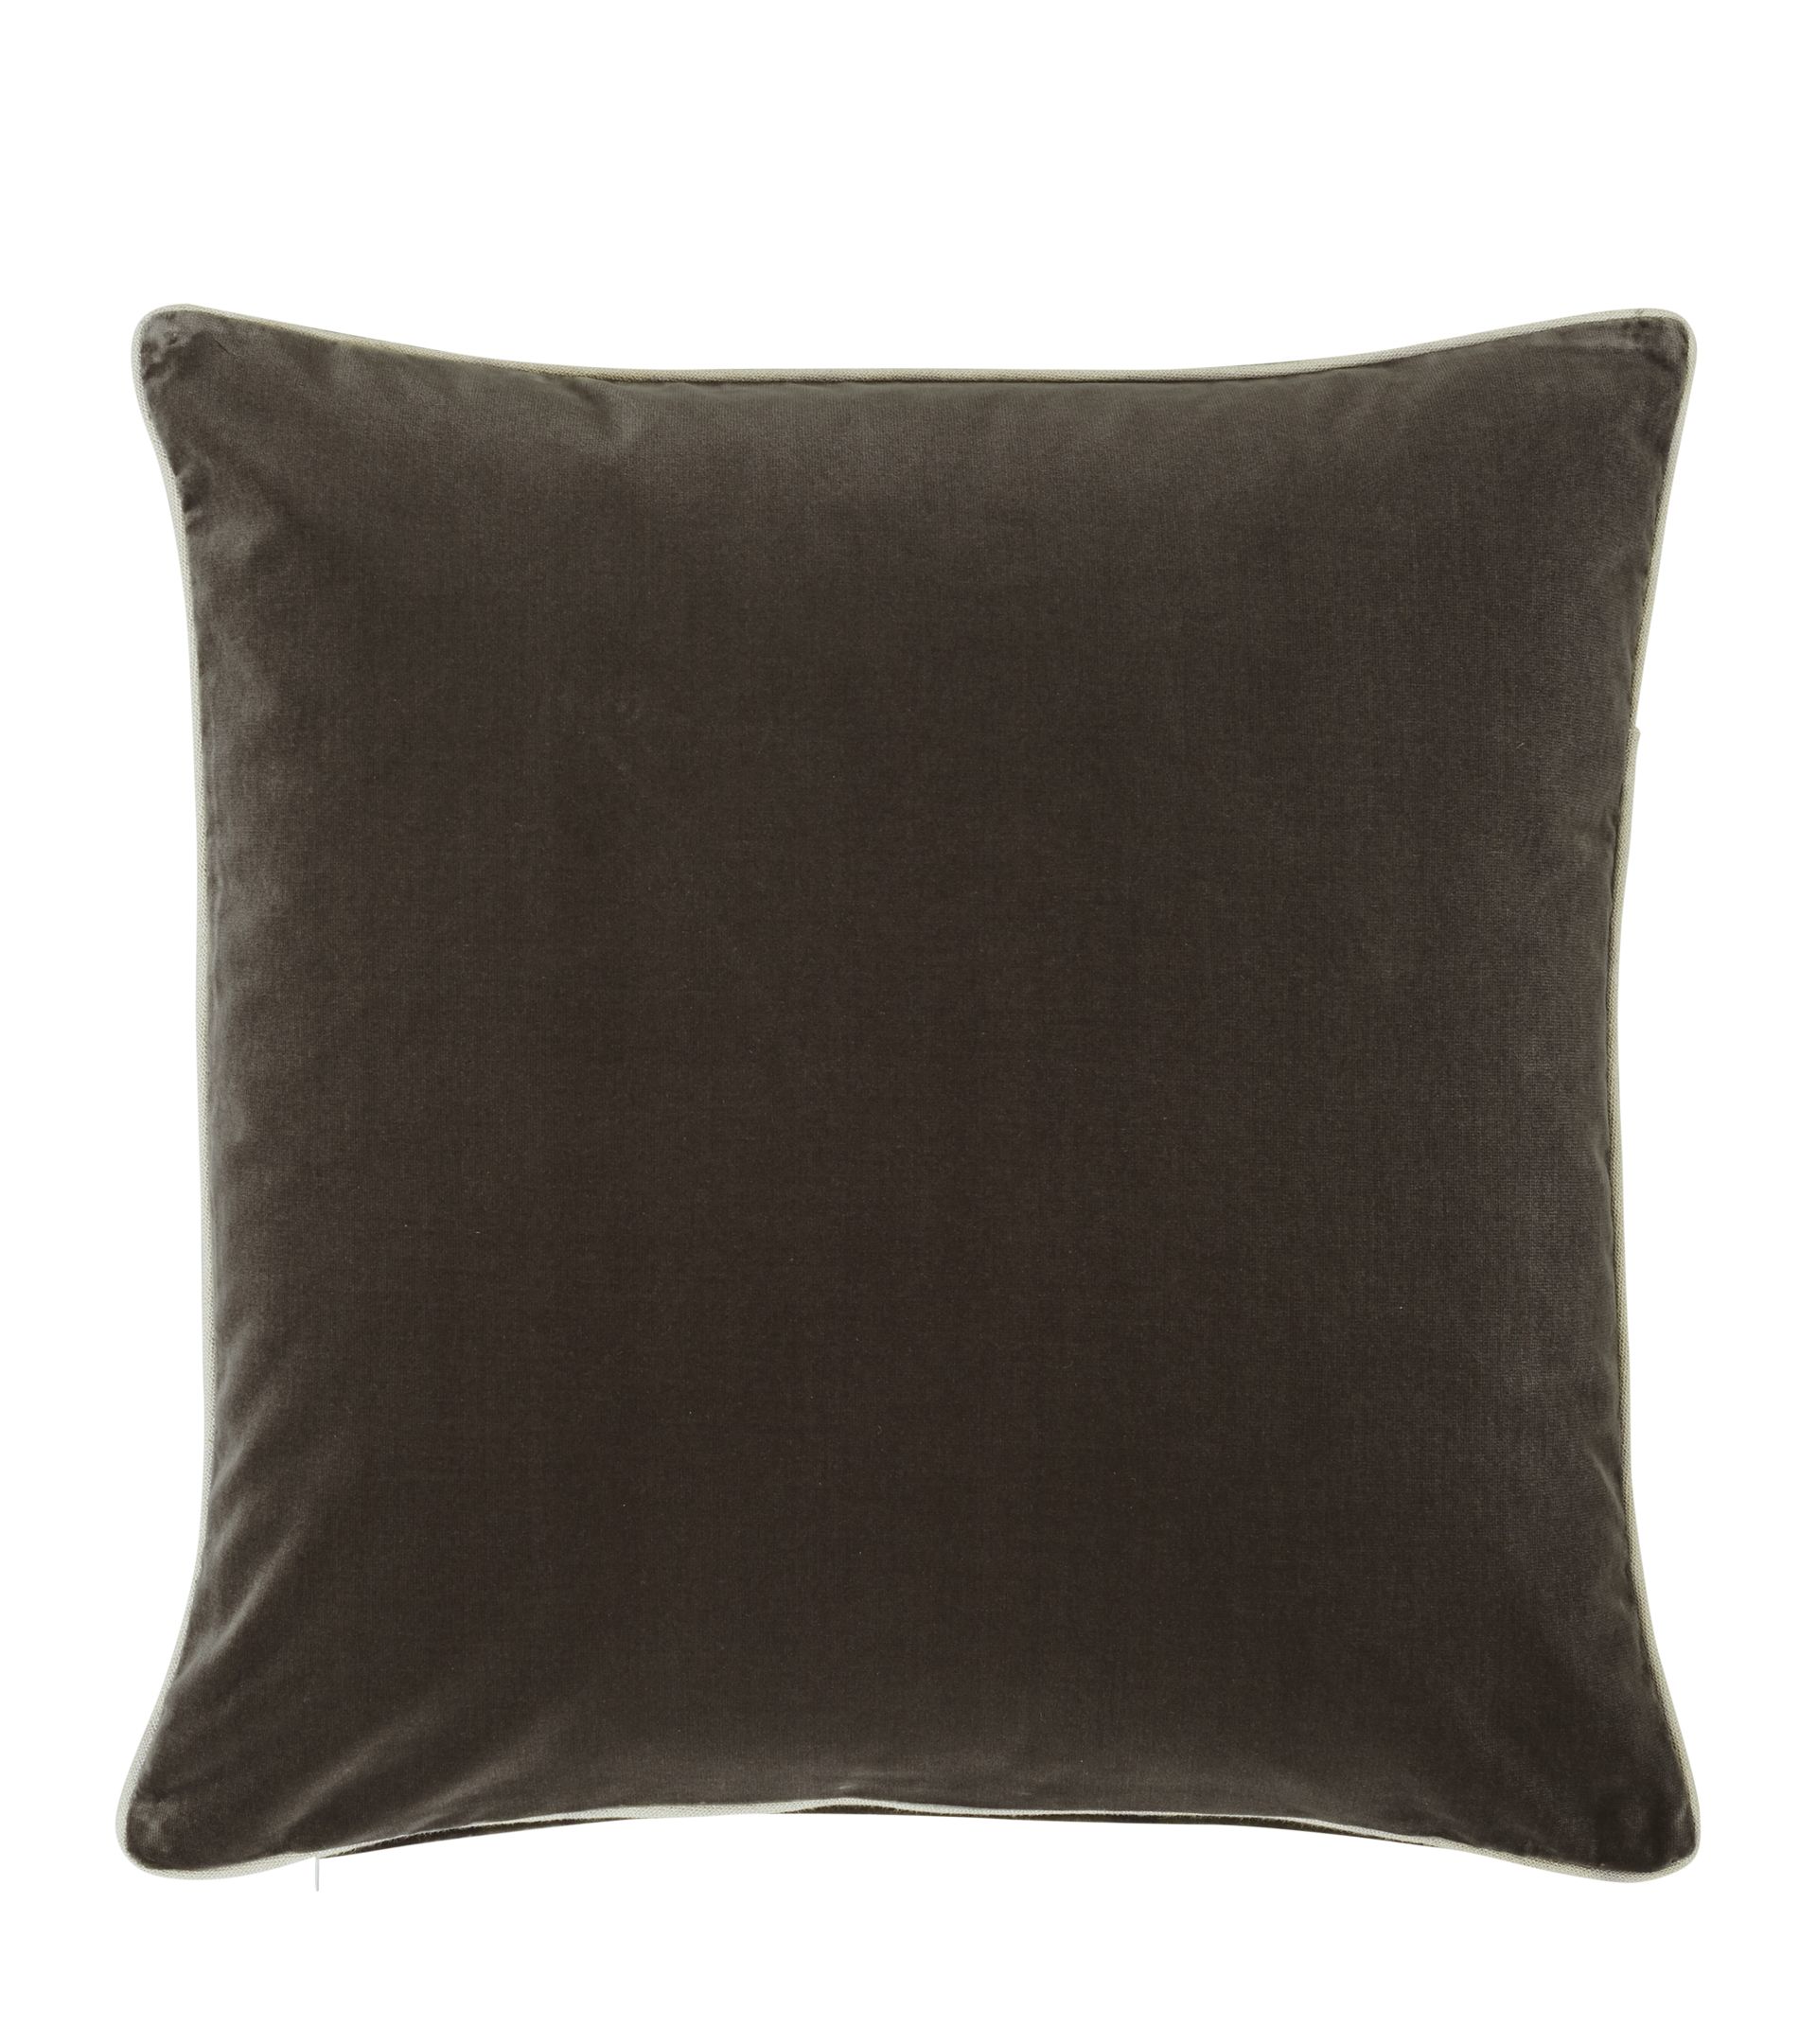 Large Plain Velvet Pillow Cover - Gray Green | OKA US